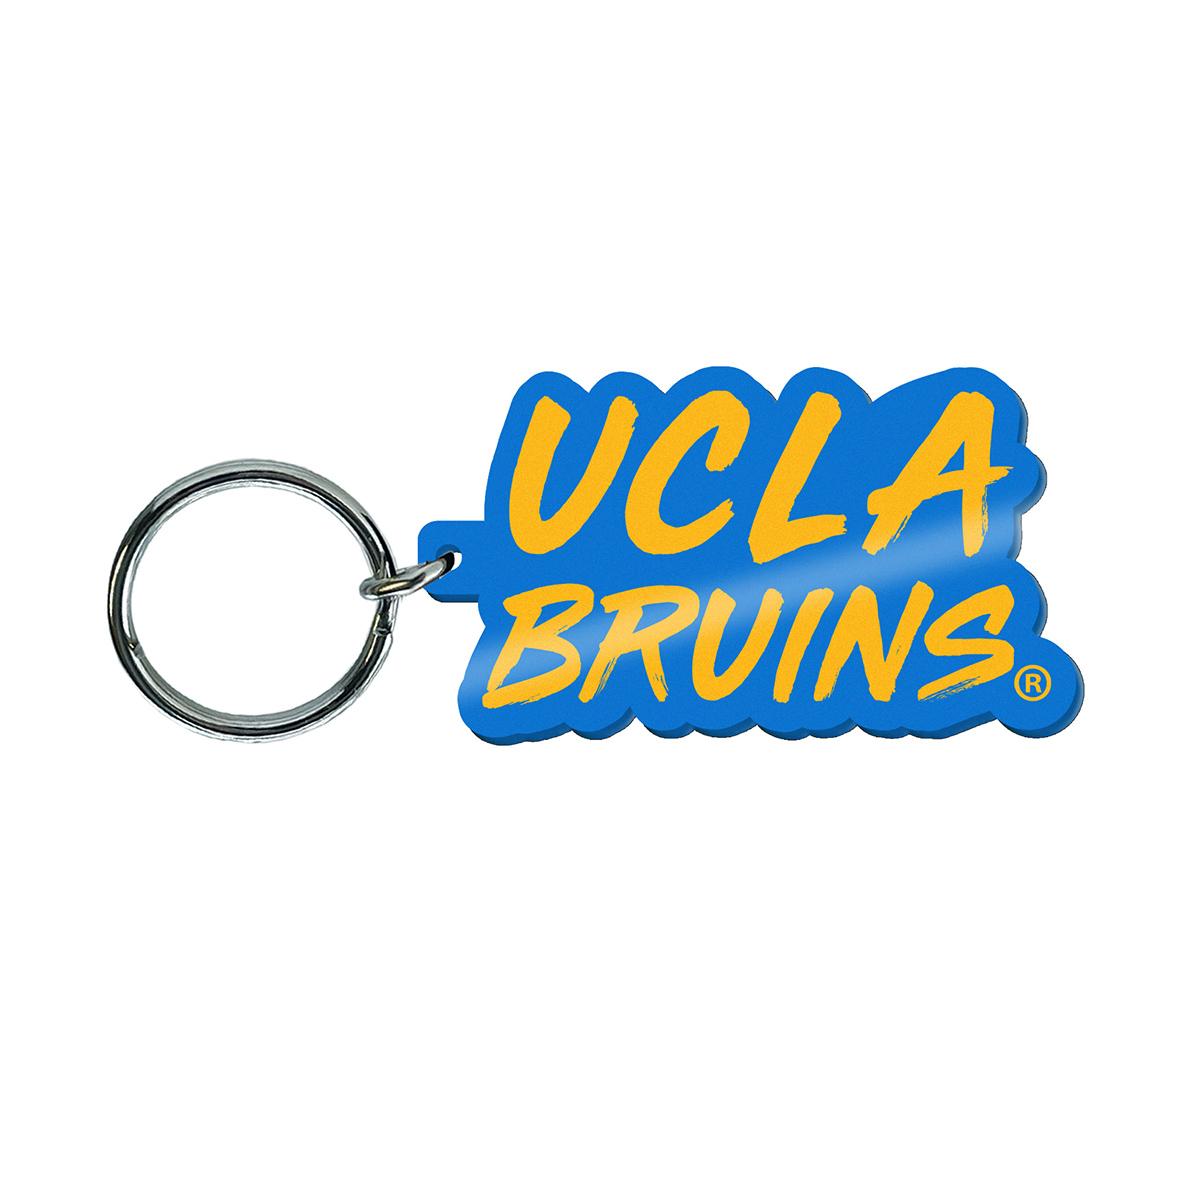 UCLA Bruins Keychain